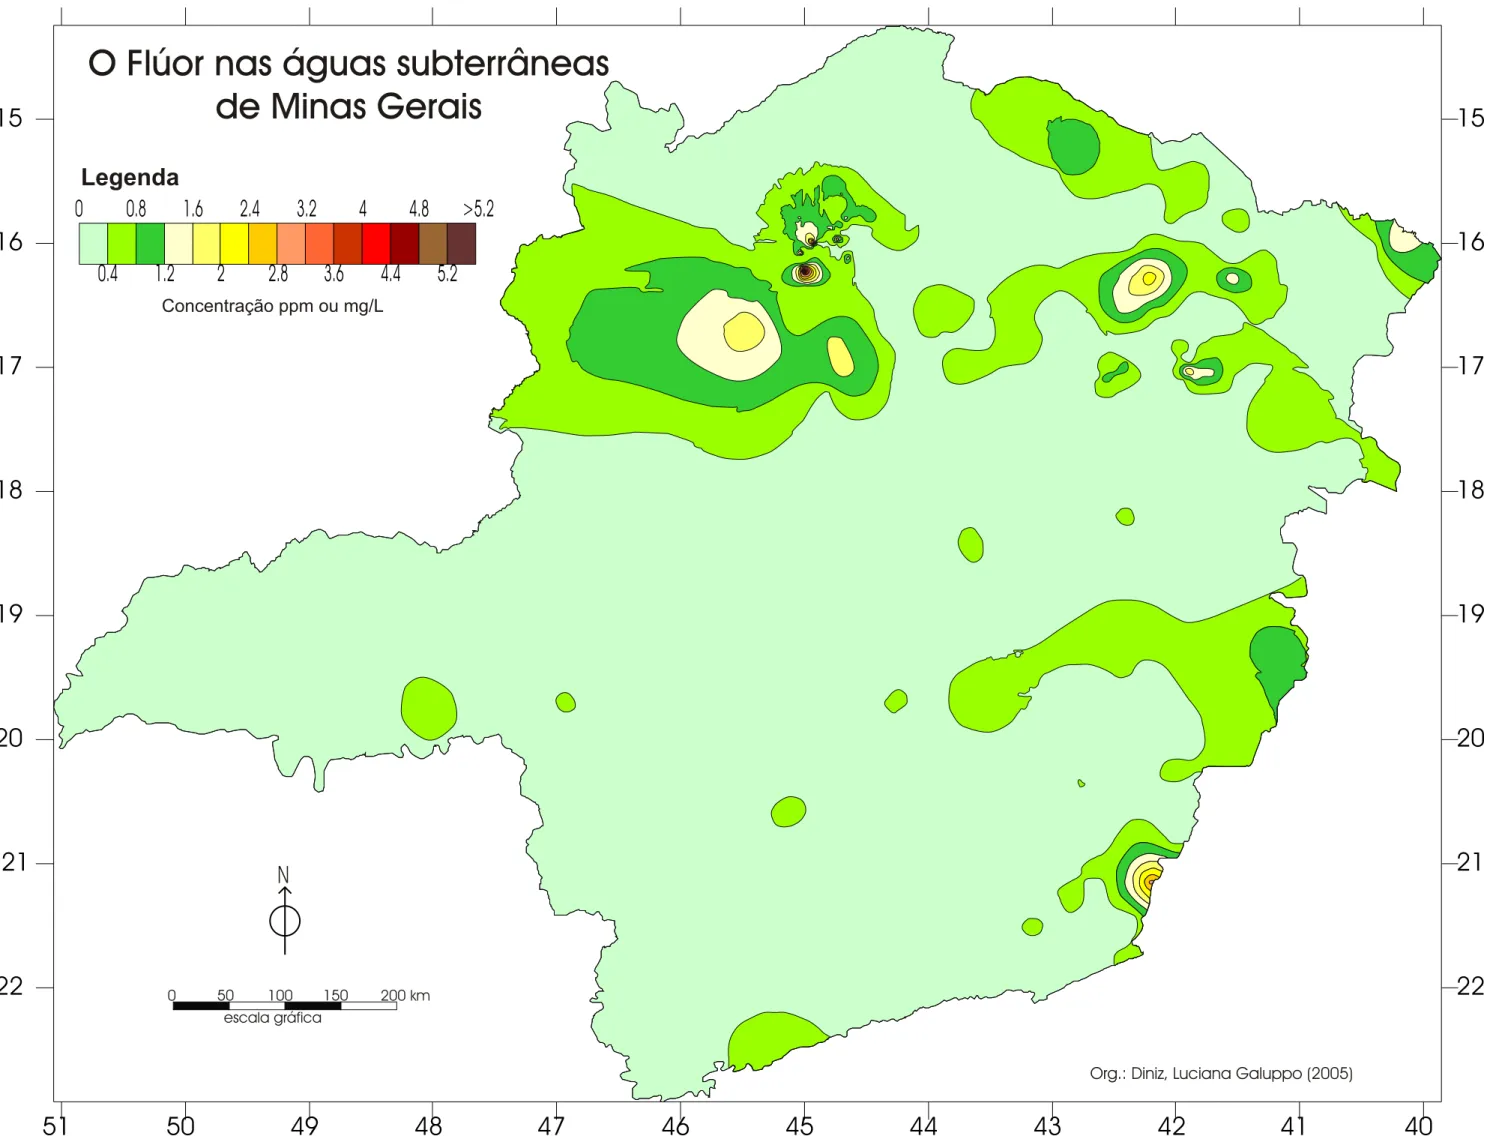 Figura  17:  Concentração  de  flúor  nas  águas  subterrâneas  dos  383  poços  tubulares  georeferenciados  em  Minas  Gerais.